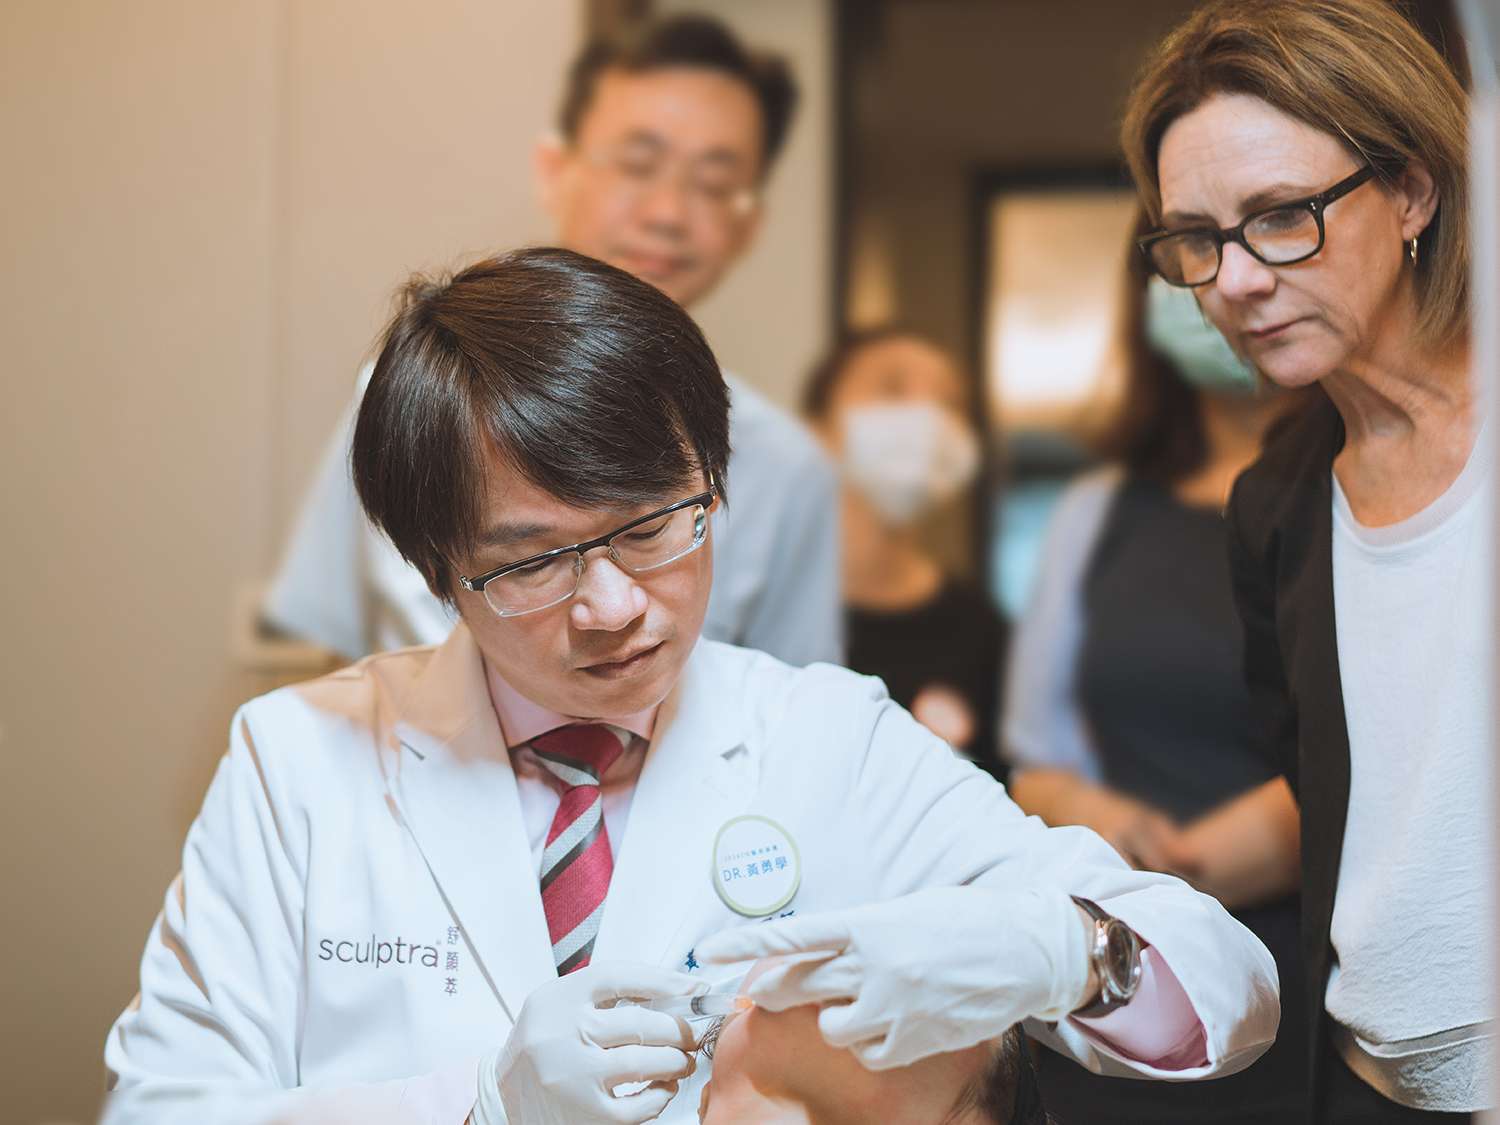 黃勇學醫師與舒顏萃教母Dr. Rebecca Fitzgerald分享亞洲人在意的蘋果肌、額頭注射技法